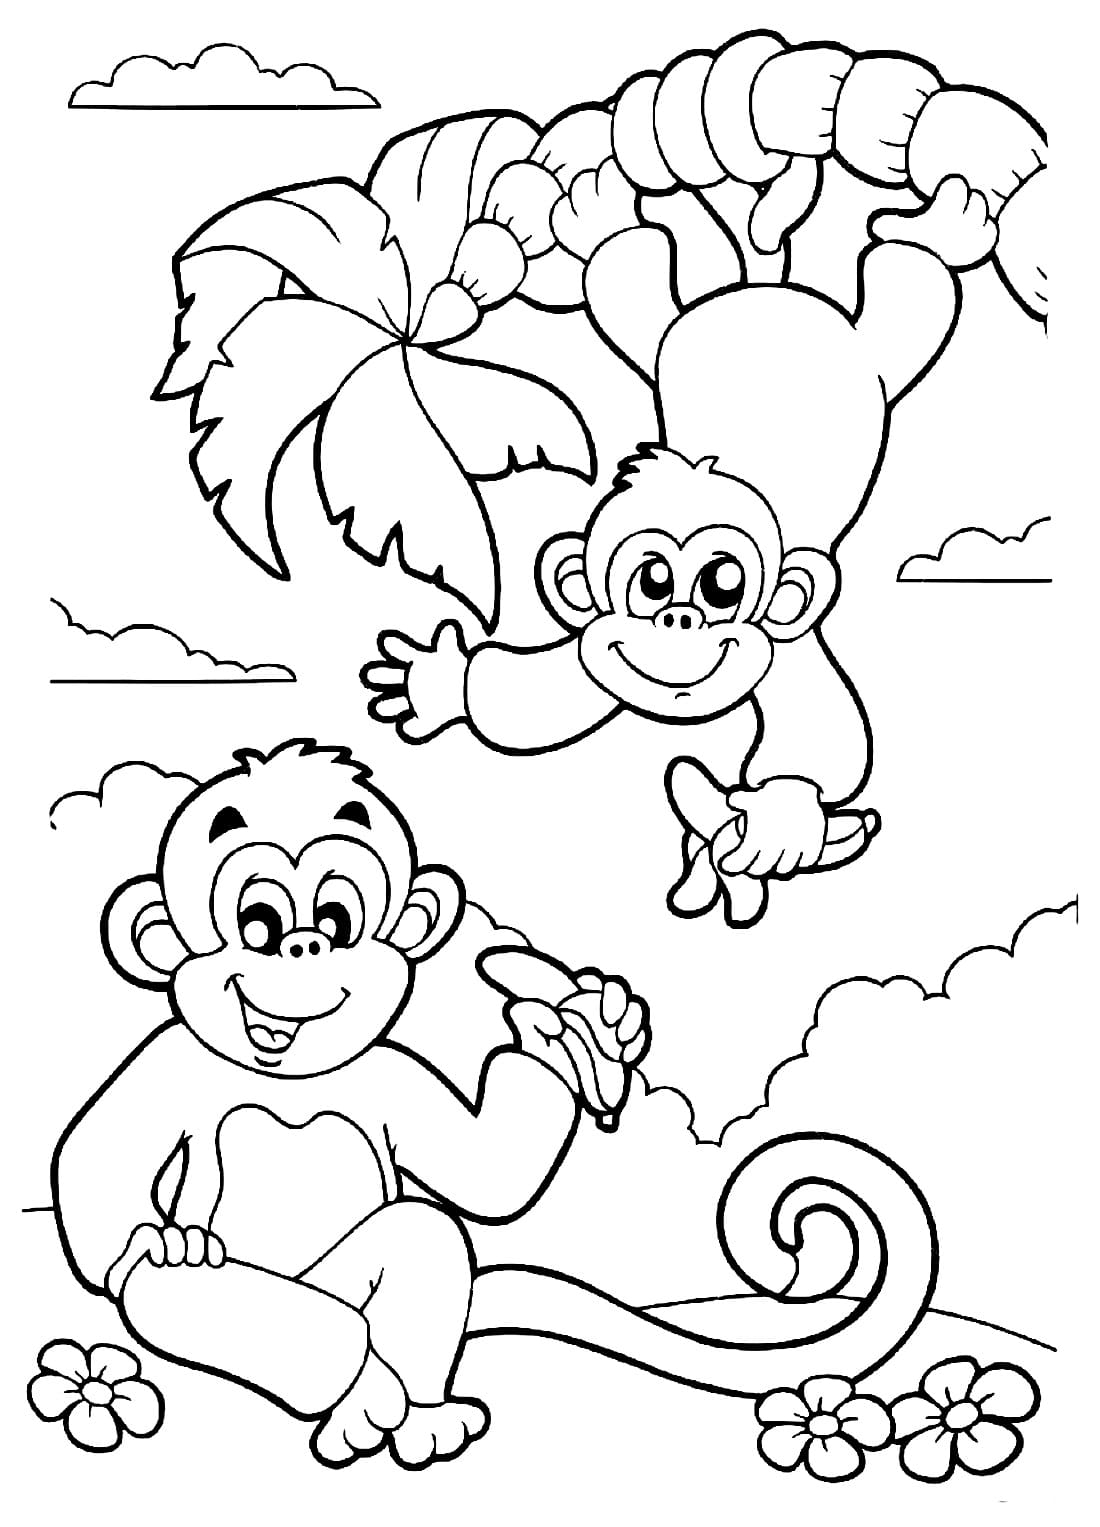 Бесплатные раскраски обезьяна. Распечатать раскраски бесплатно и скачать раскраски онлайн.